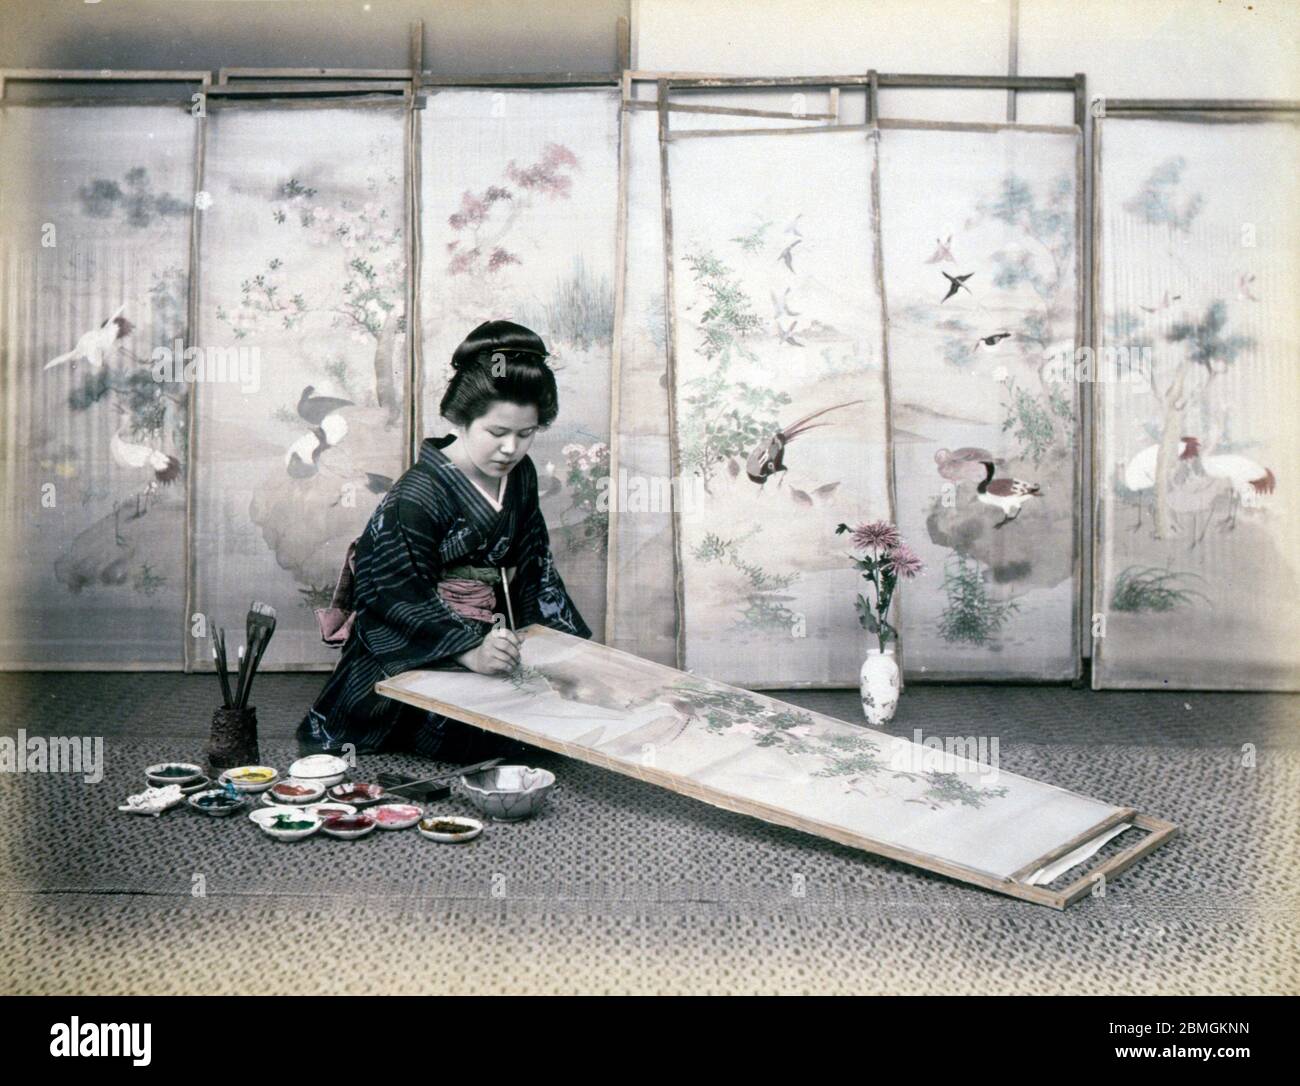 [ 1880 Japon - artiste japonais au travail ] — UNE artiste féminine peint un tableau traditionnel sur un écran. photographie d'albumine vintage du xixe siècle. Banque D'Images